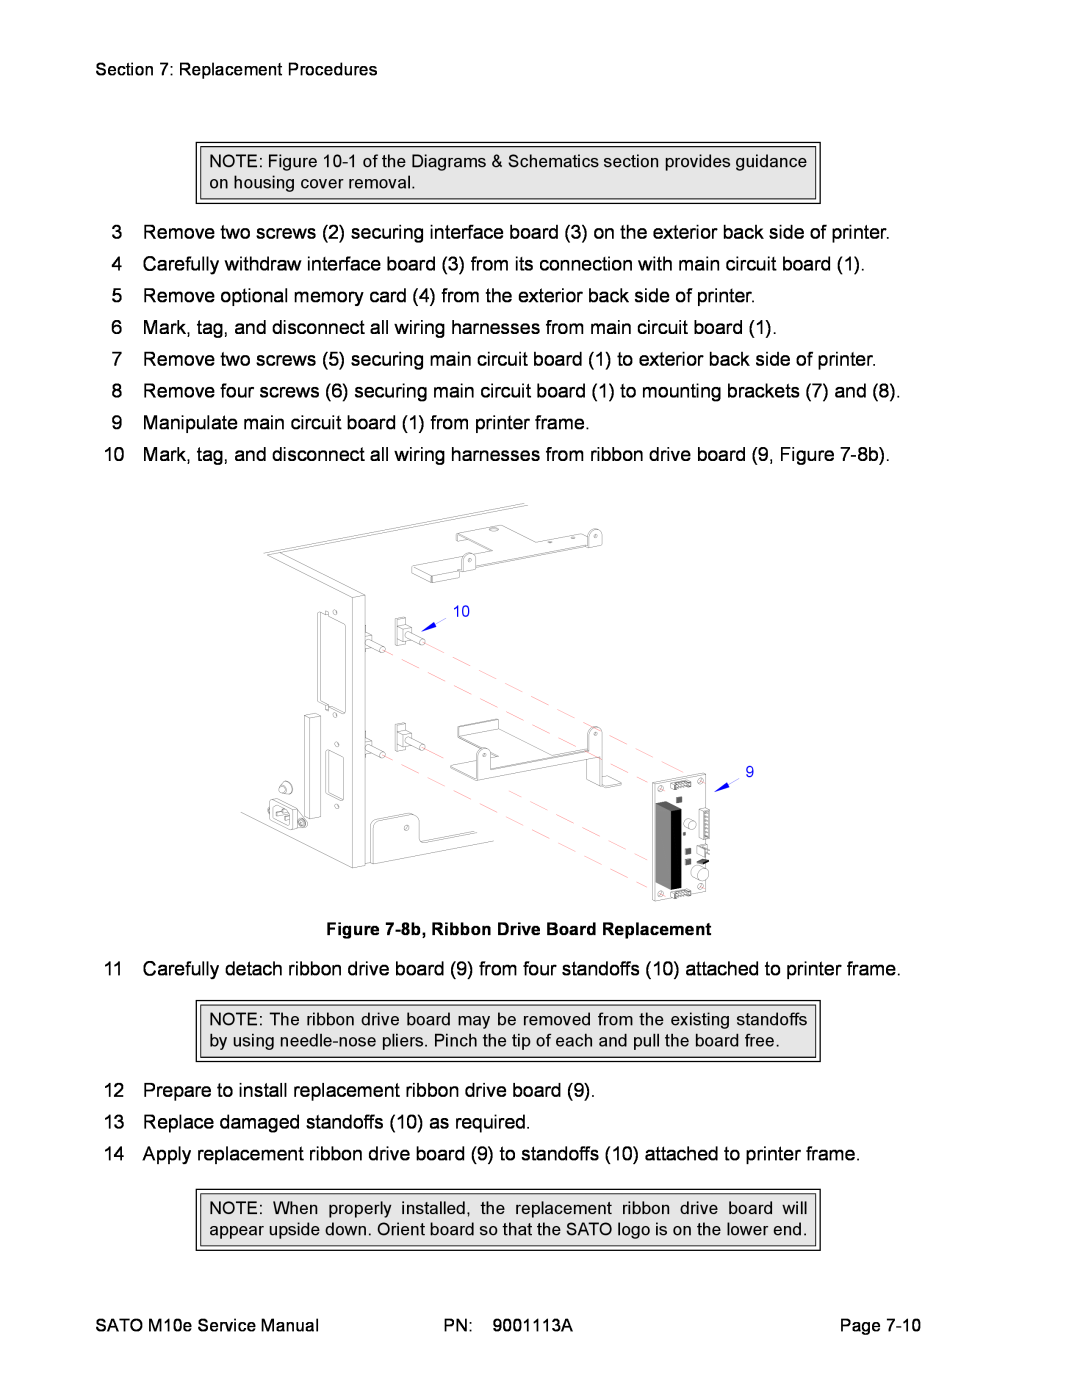 SATO 10e service manual 8b, Ribbon Drive Board Replacement 